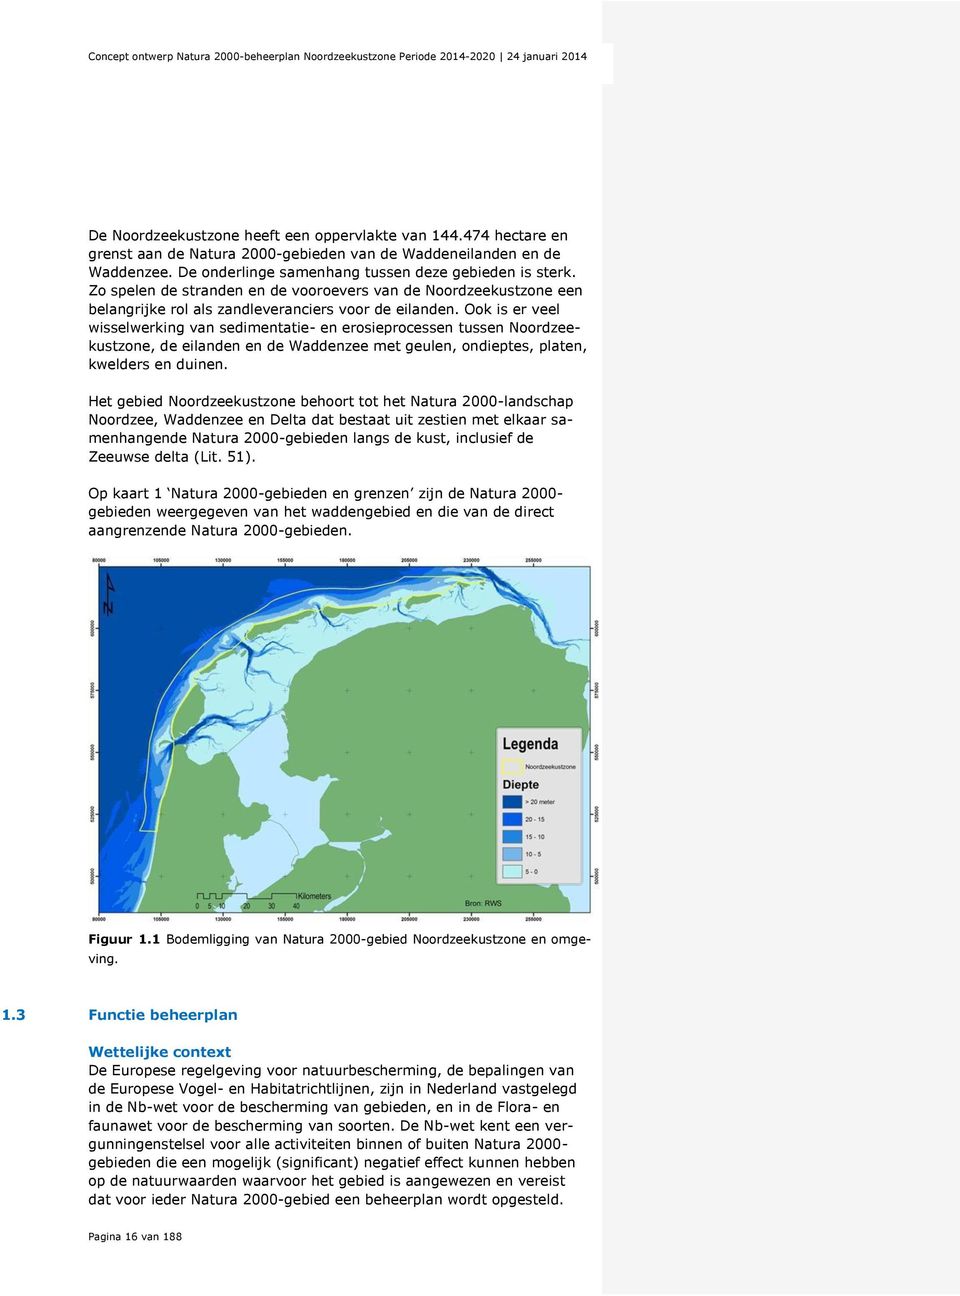 Ook is er veel wisselwerking van sedimentatie- en erosieprocessen tussen Noordzeekustzone, de eilanden en de Waddenzee met geulen, ondieptes, platen, kwelders en duinen.